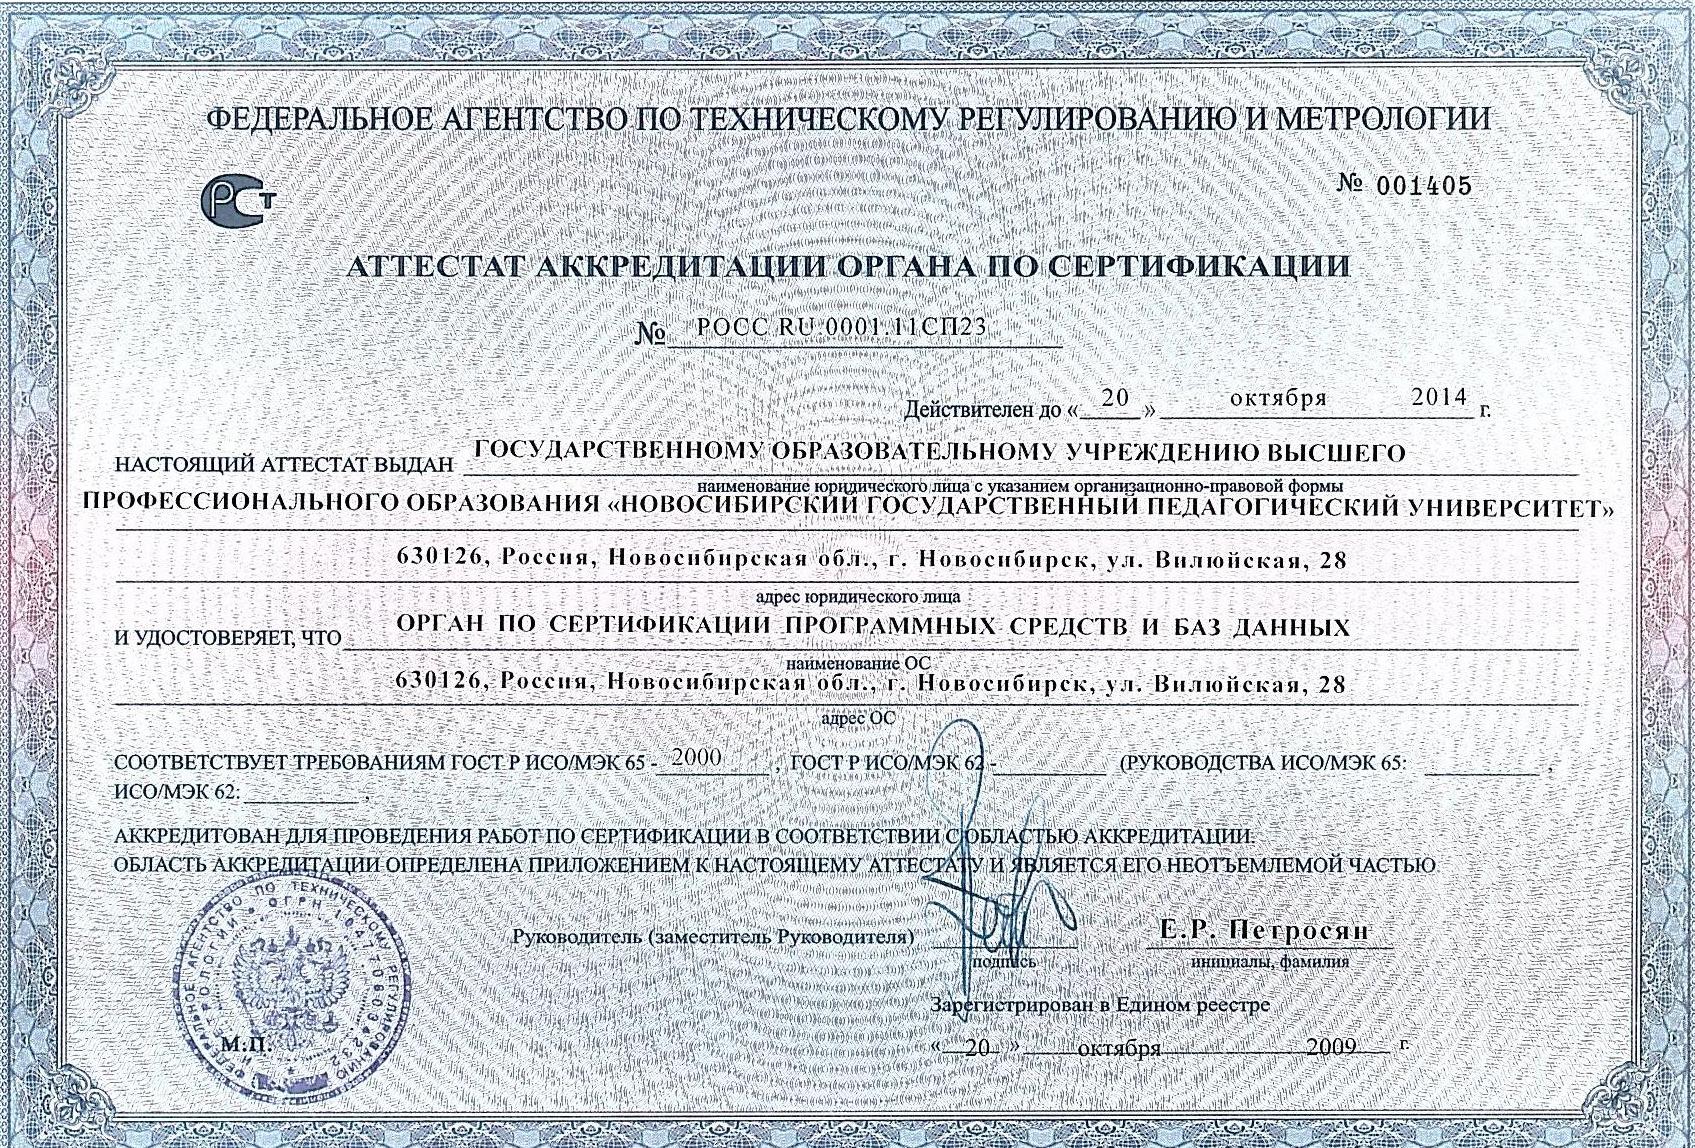 Аттестат аккредитации: Орган по сертификации программных средств и баз данных